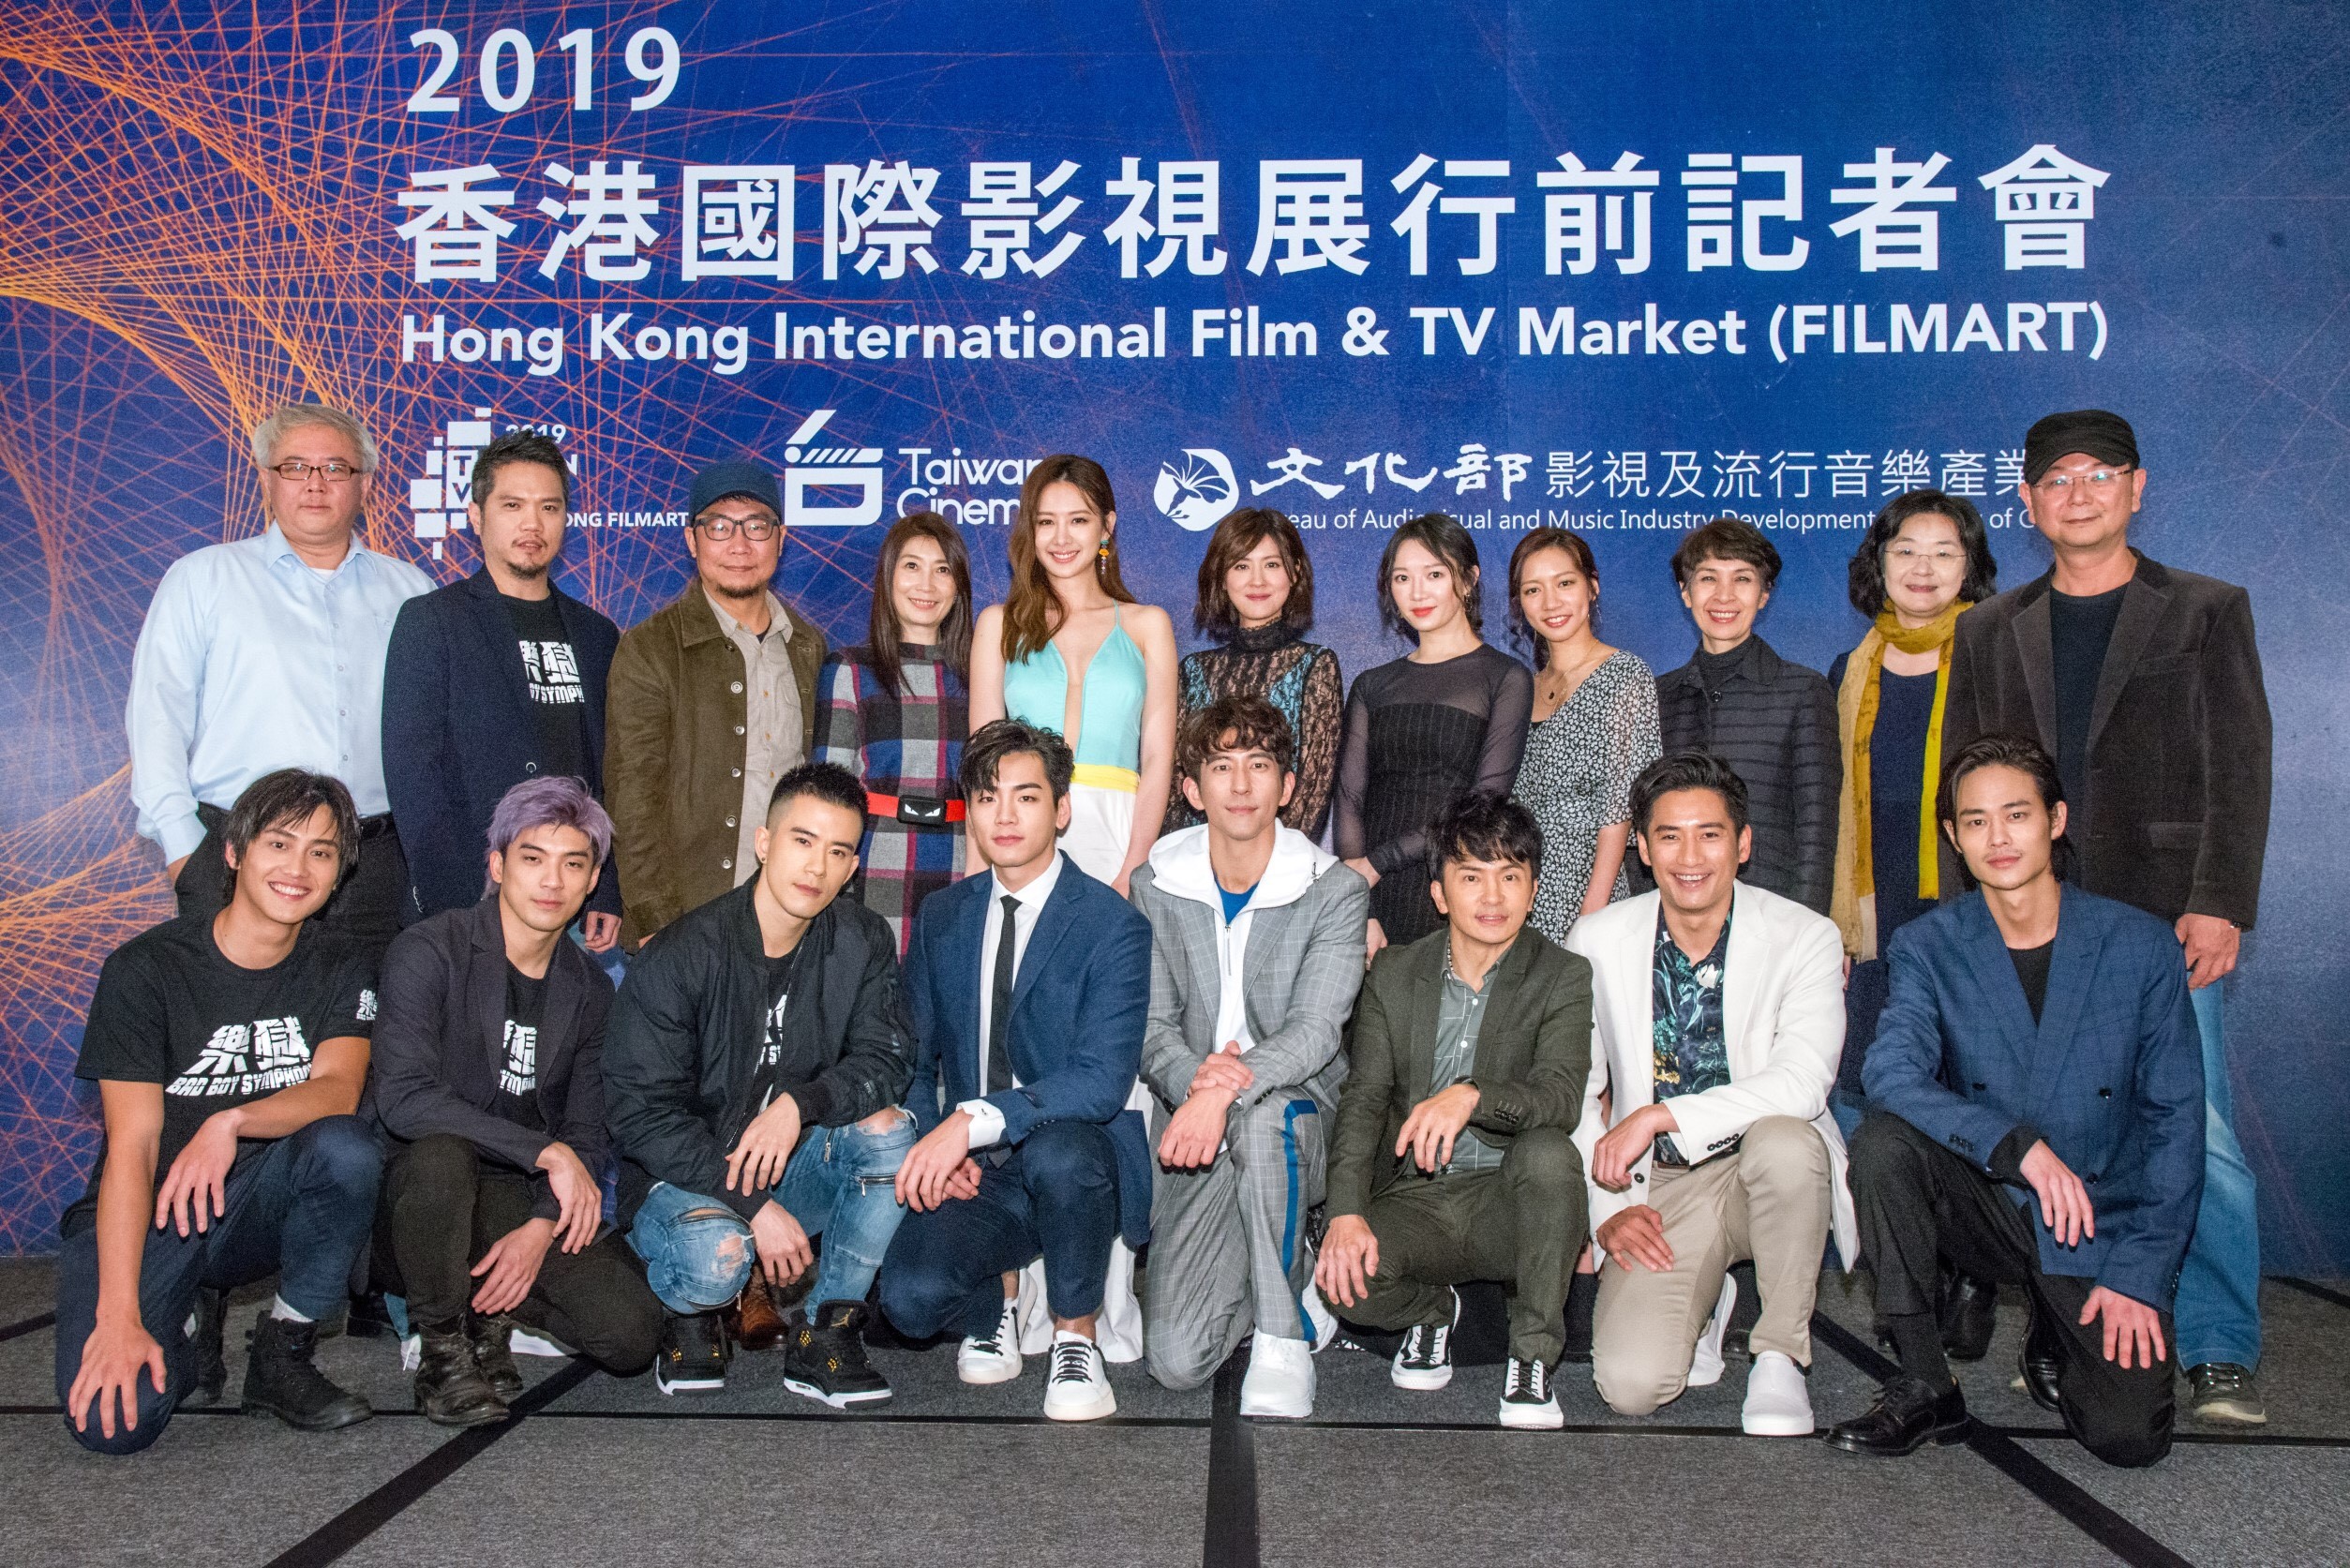 2019年香港國際影視展開跑 行前記者會眾星雲集齊聚造勢